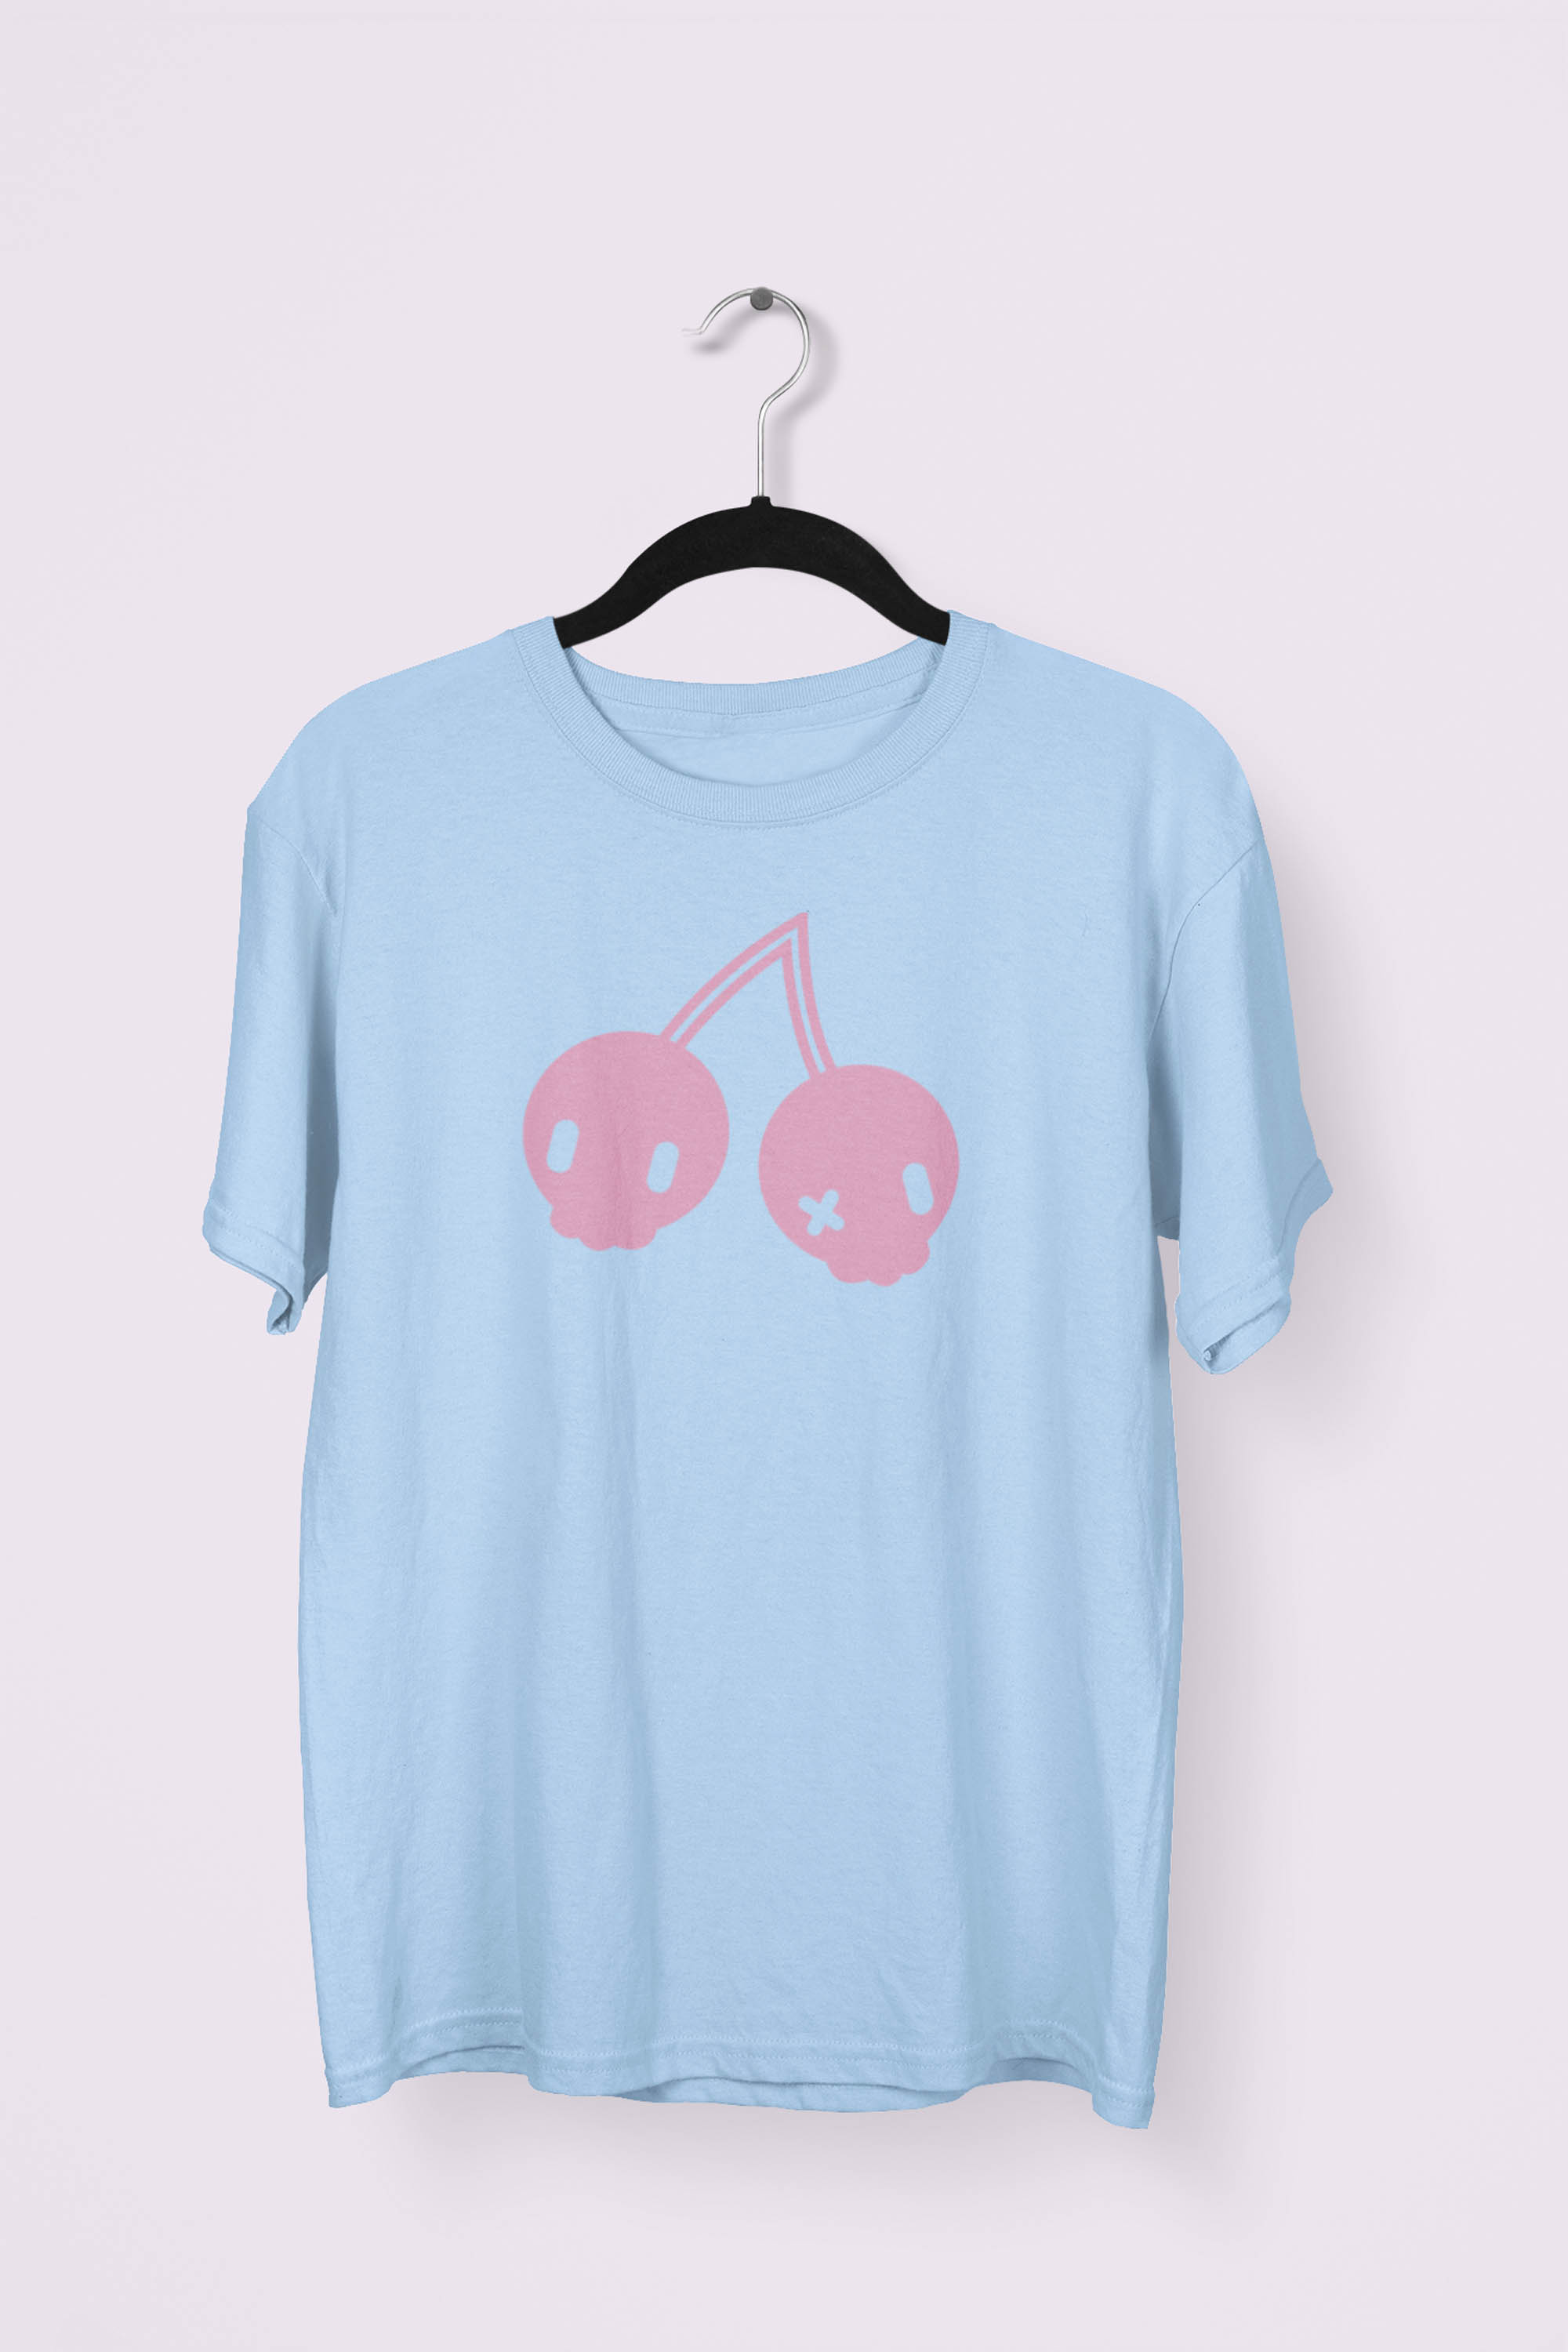 Cherry Skulls T-shirt by Dokkirii - Light Blue